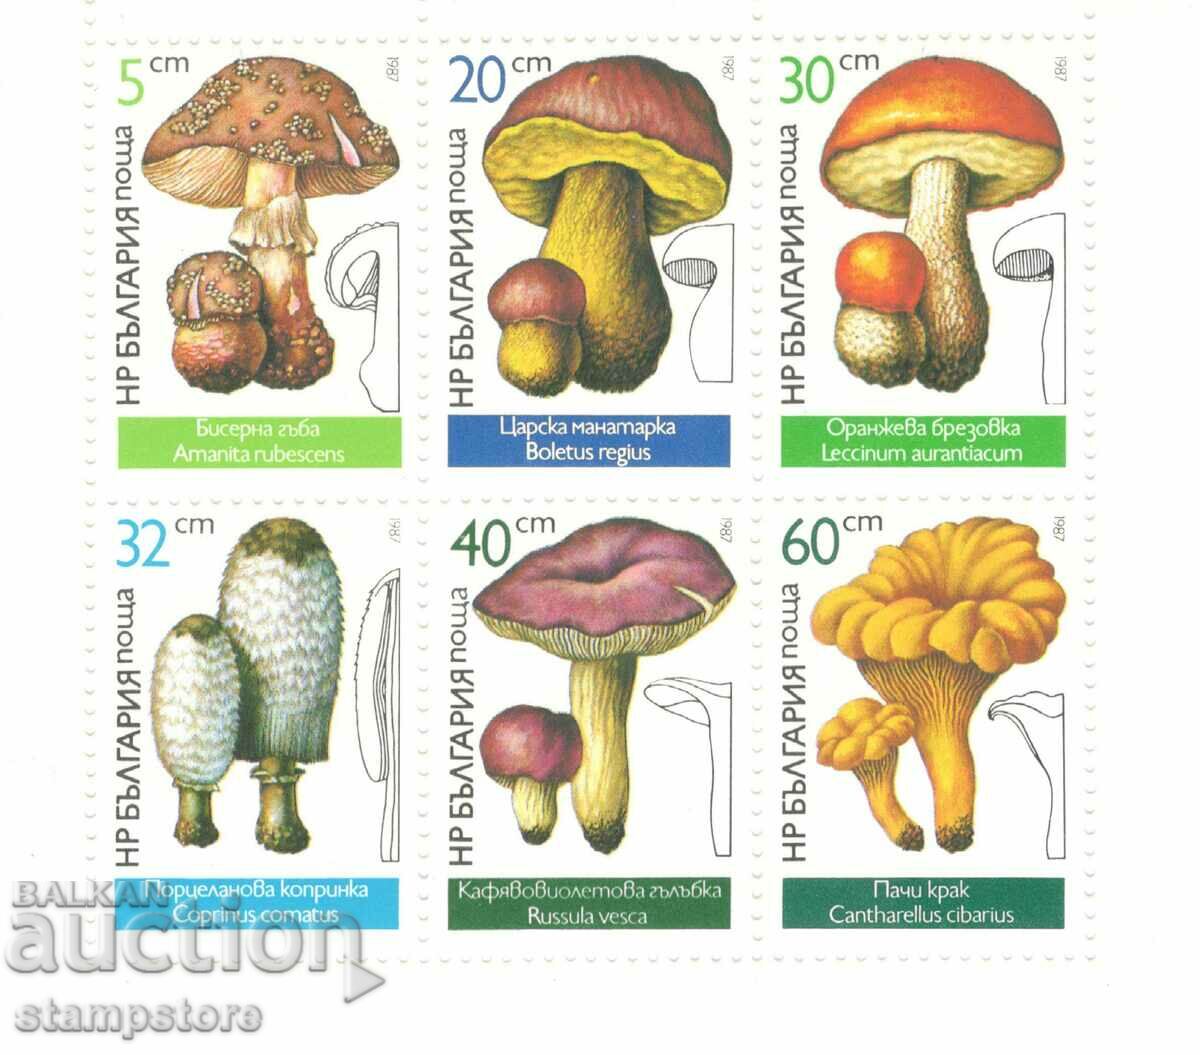 Small leaf Mushrooms